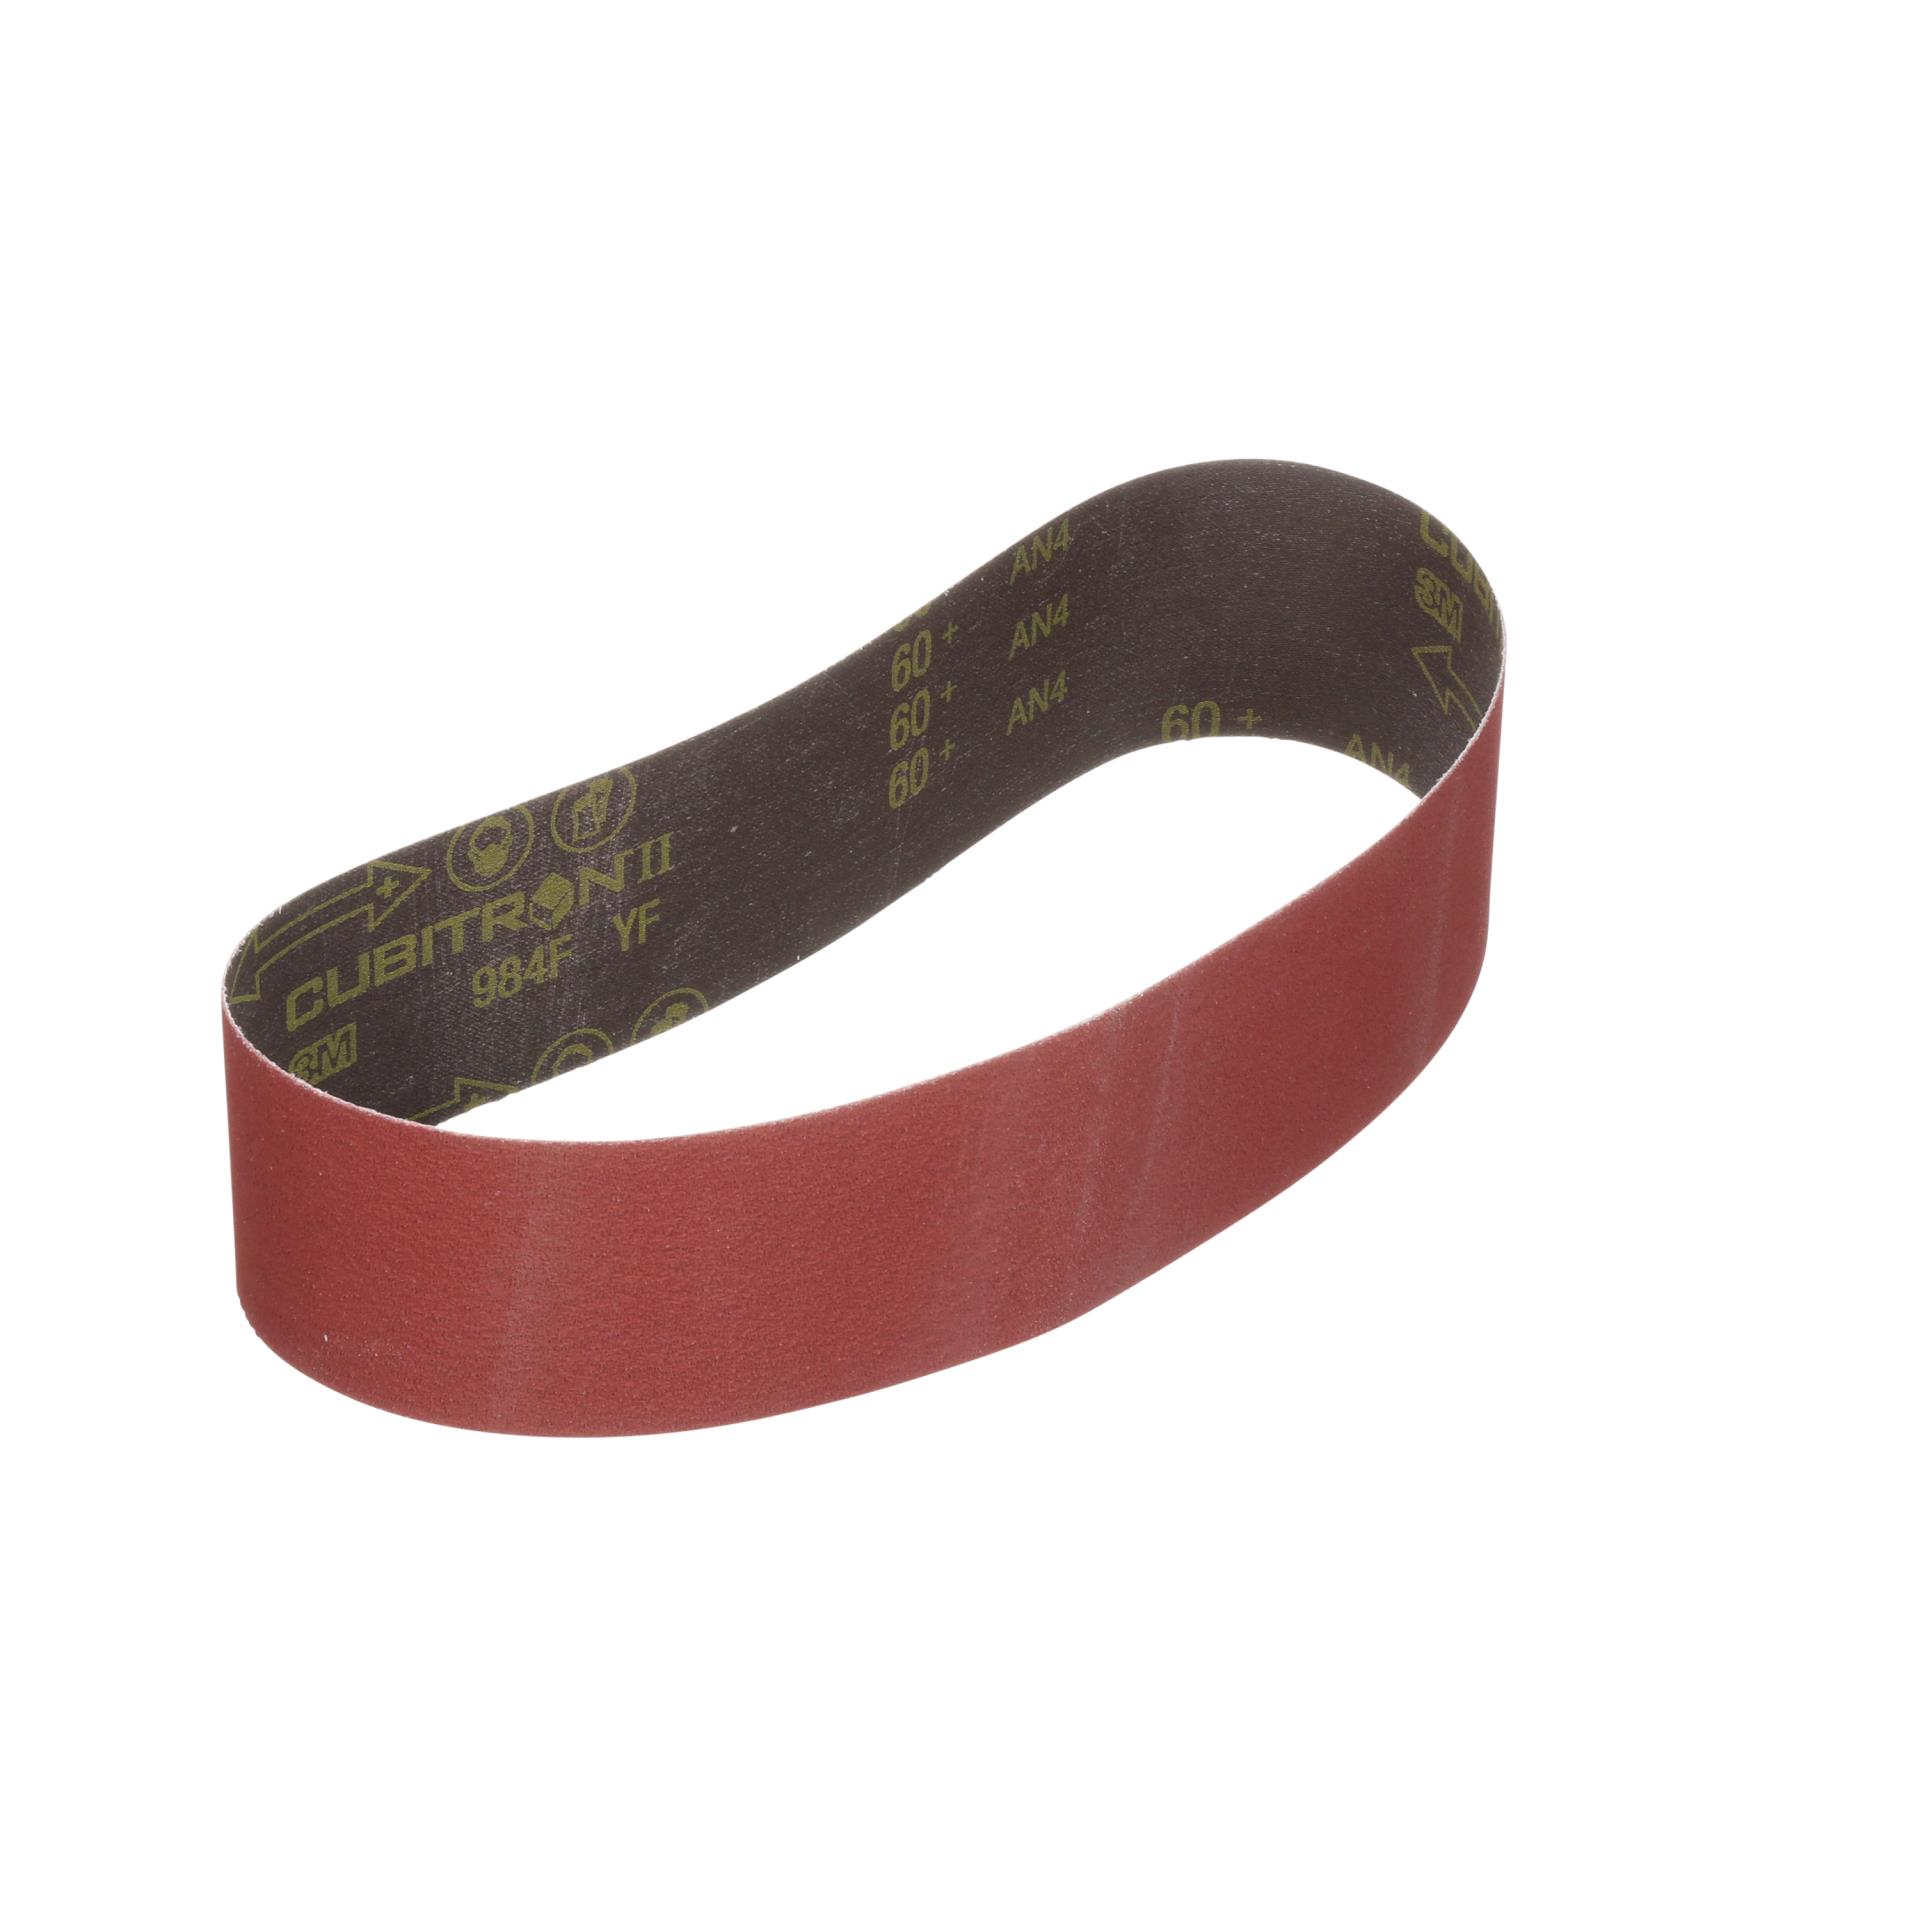 2"x42" Sanding Belts 220 Grit Premium Red "J" Flex 5pcs 